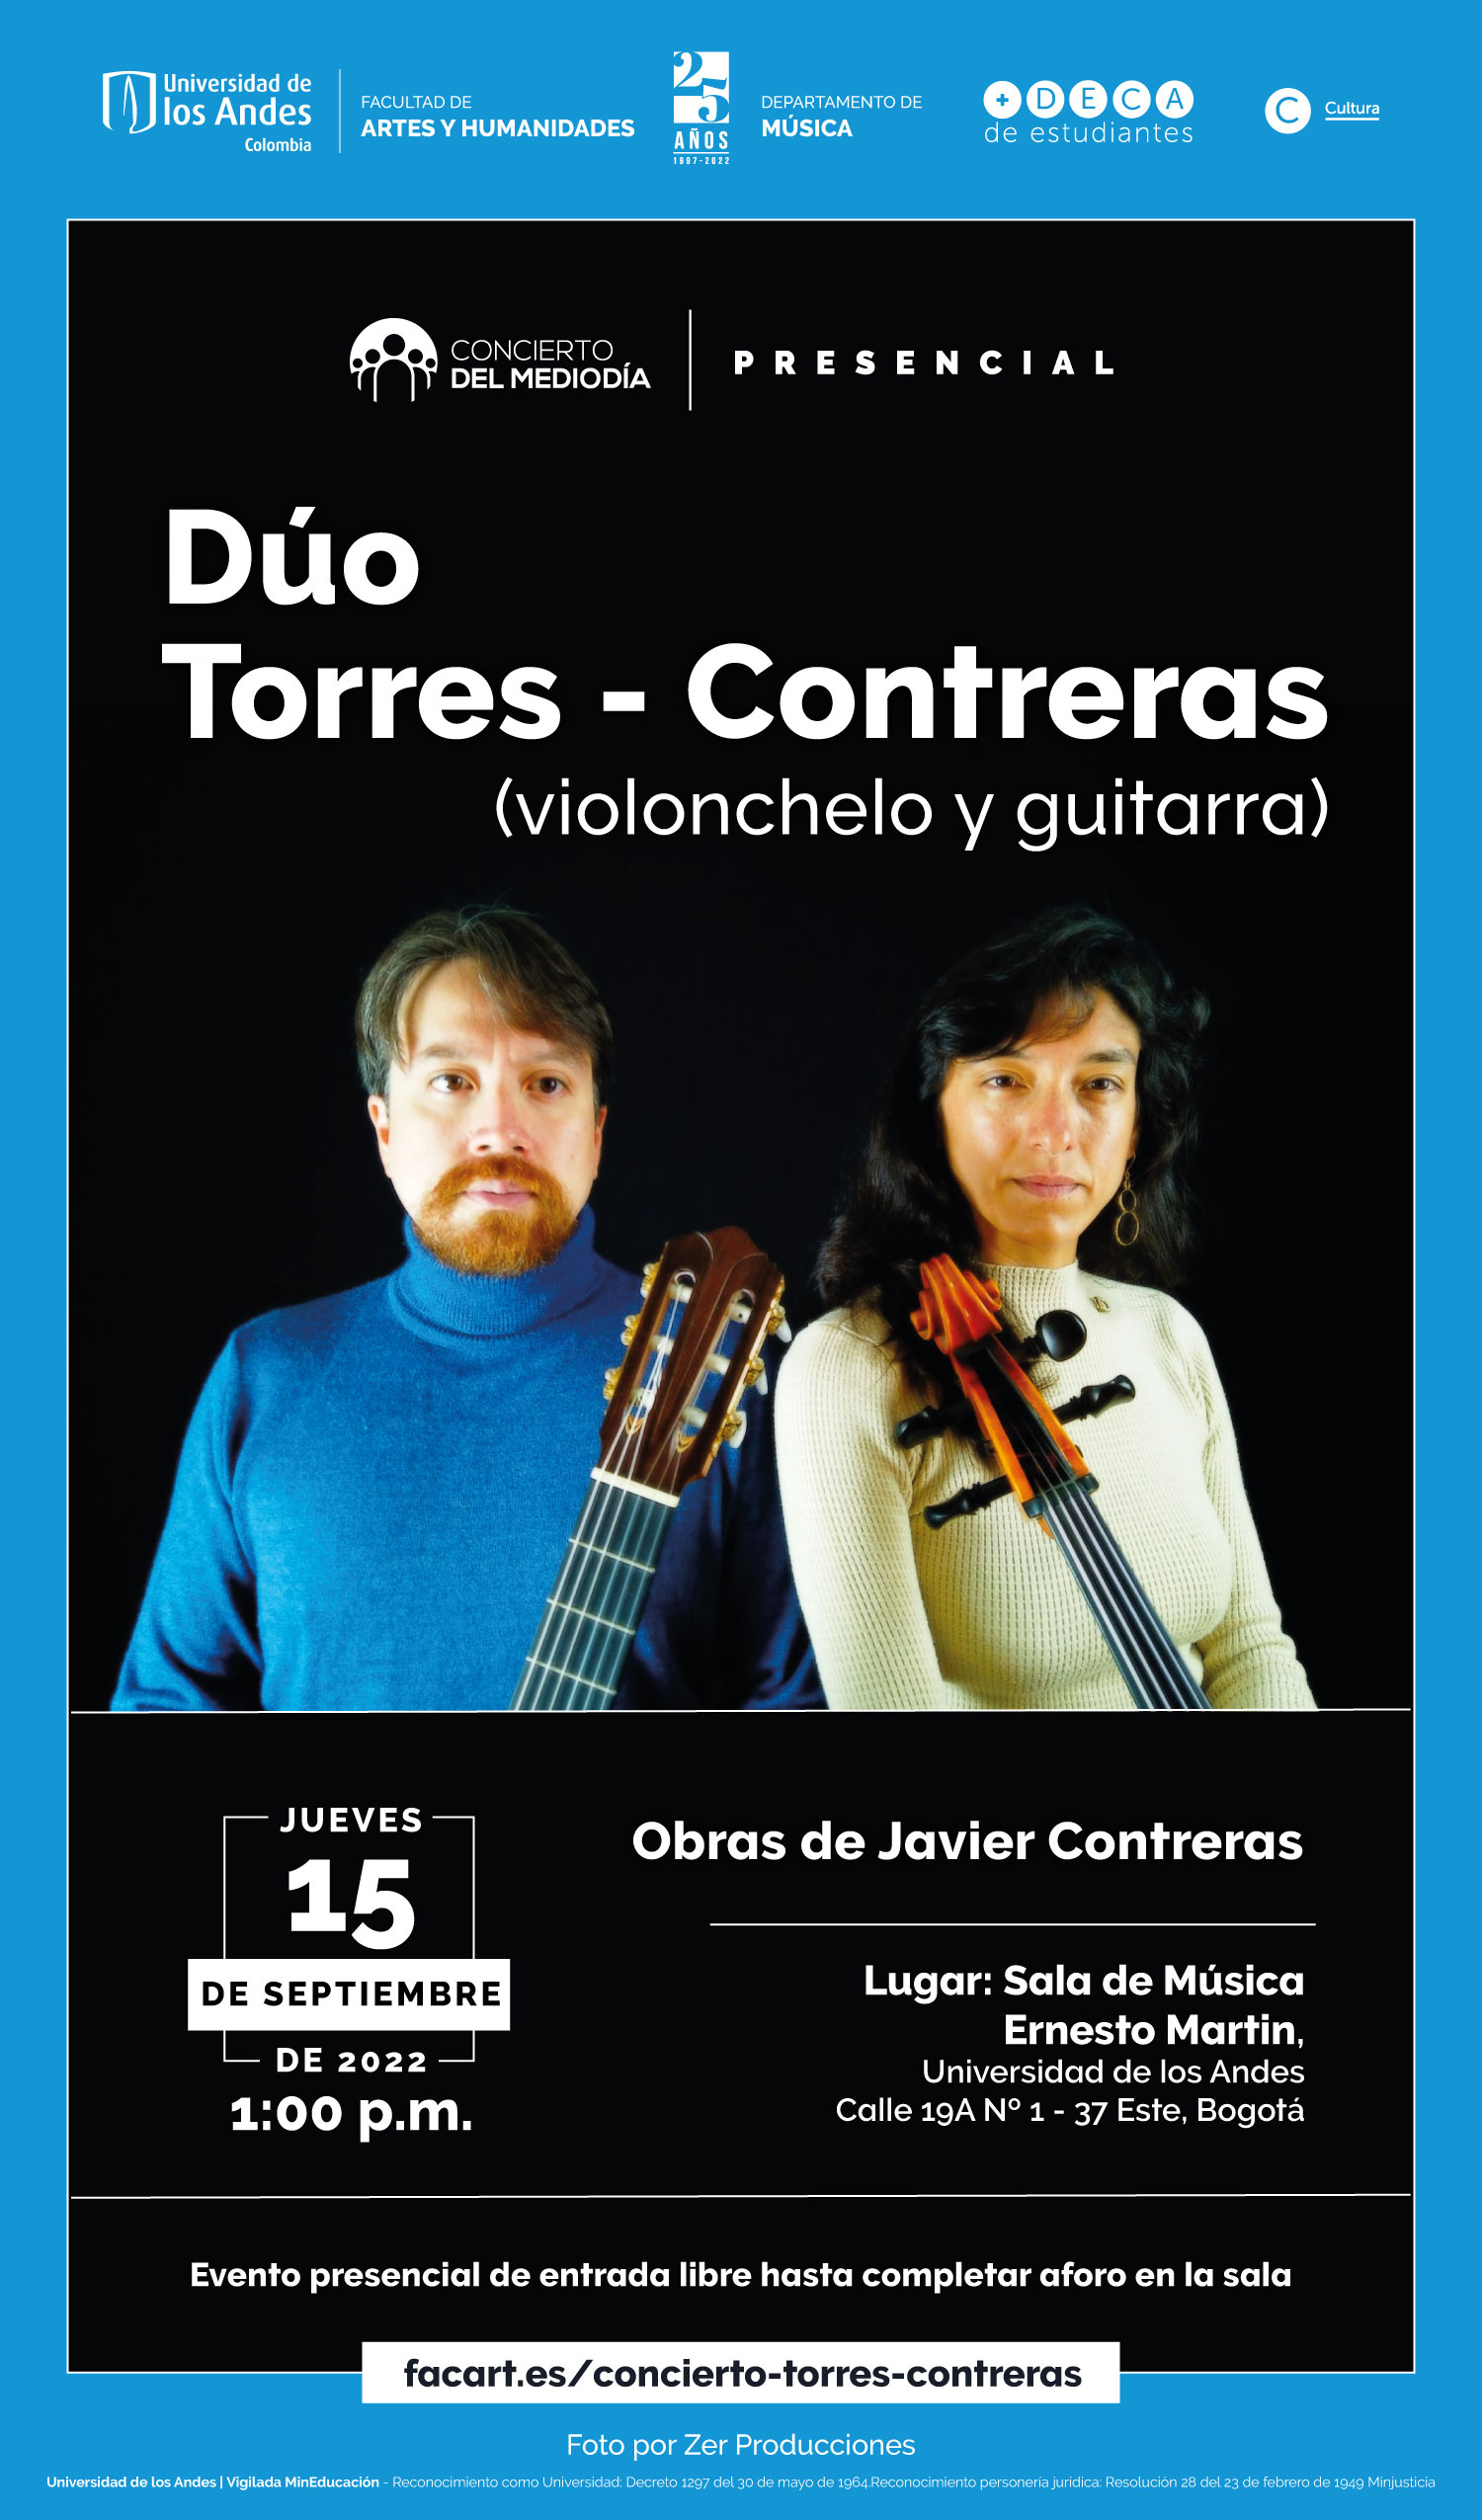 9-15-CMD-duo-torres